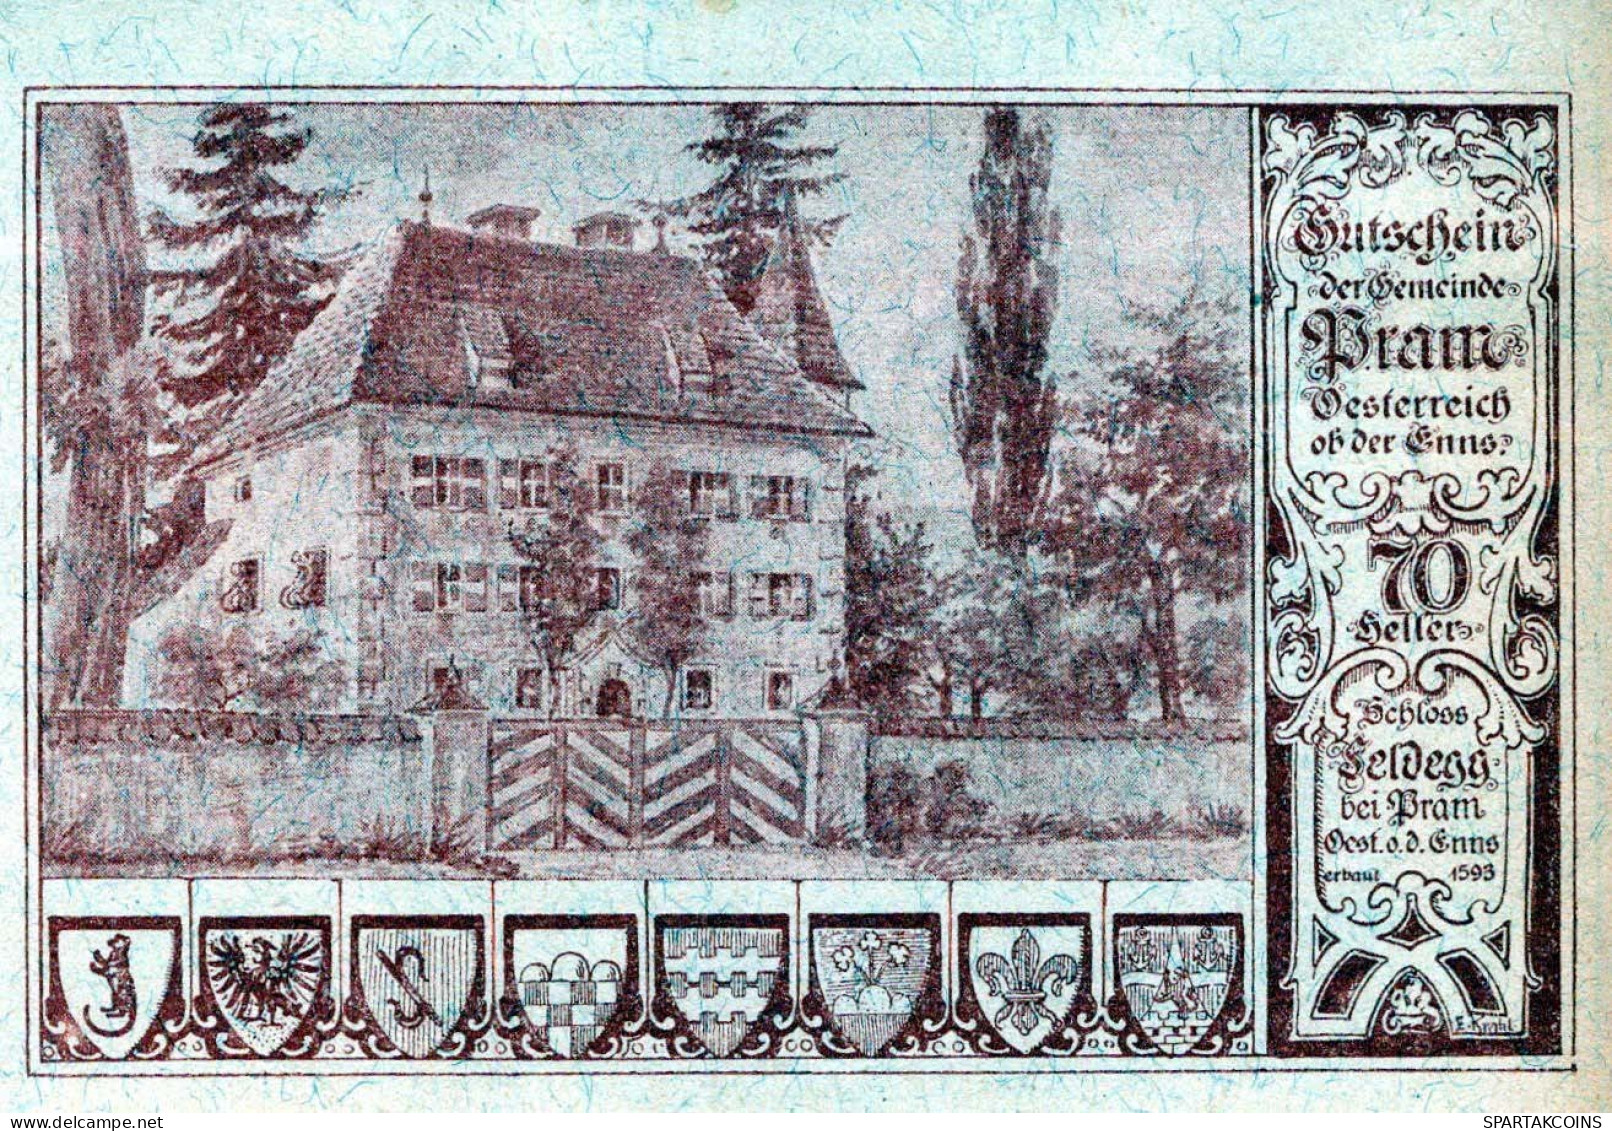 70 HELLER 1920 Stadt PRAM Oberösterreich Österreich UNC Österreich Notgeld Banknote #PH420 - Lokale Ausgaben